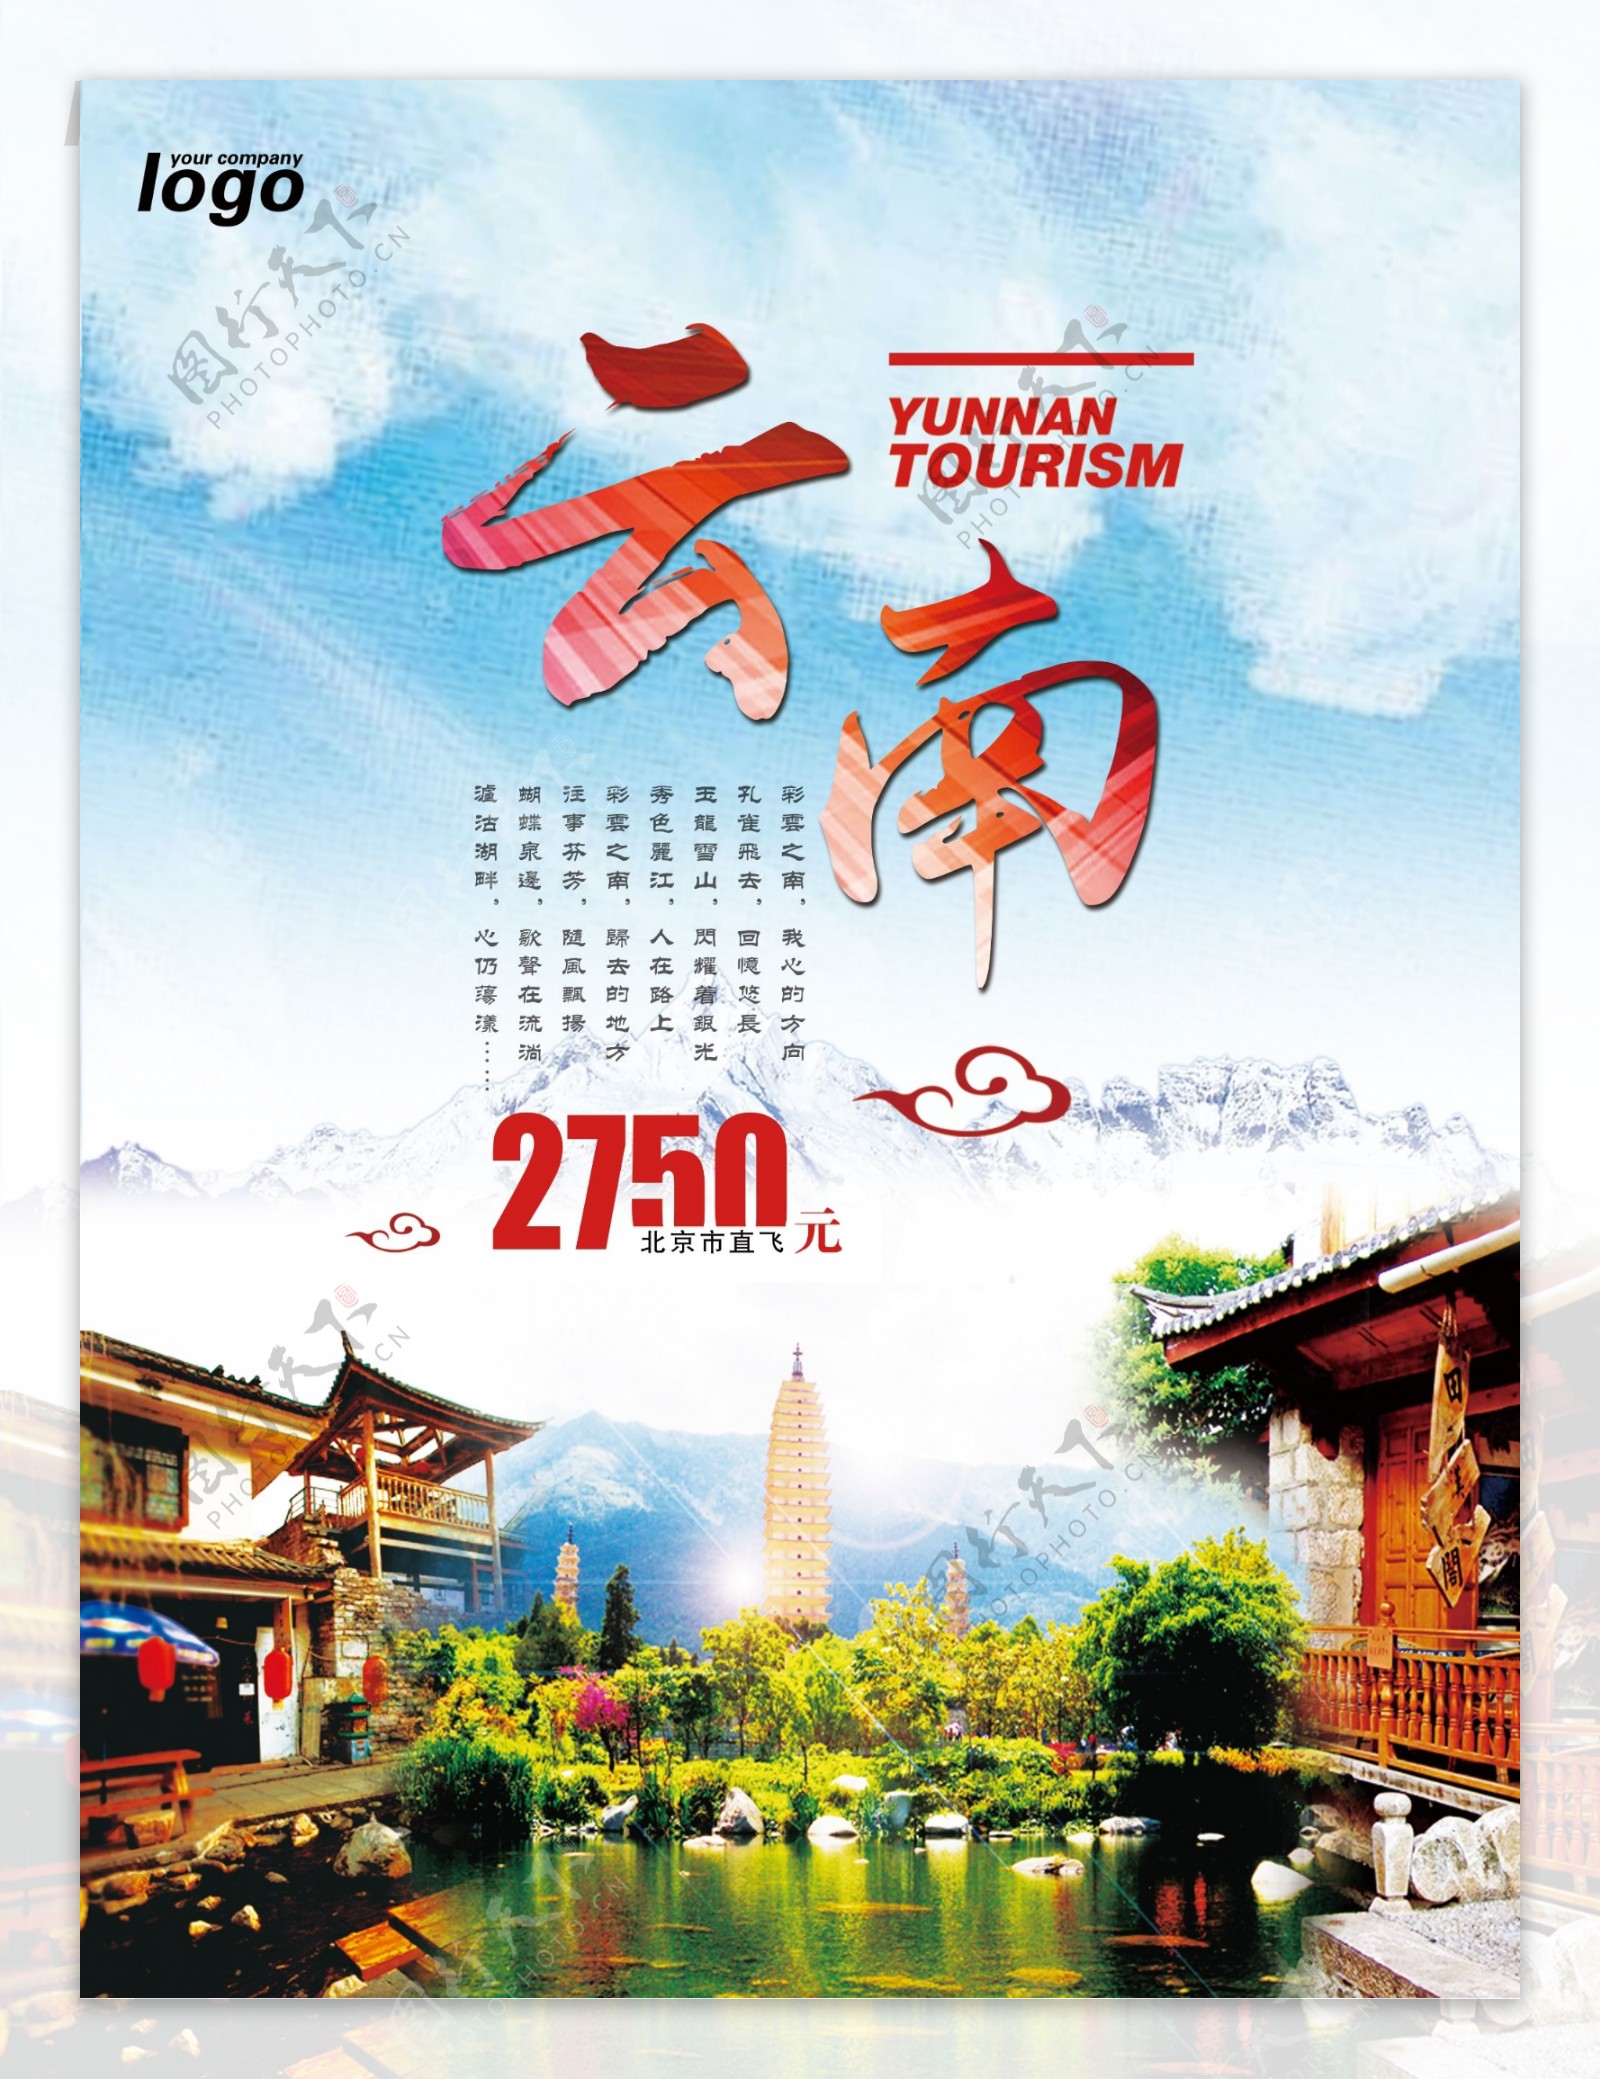 七彩云南旅行社旅游海报宣传单设计